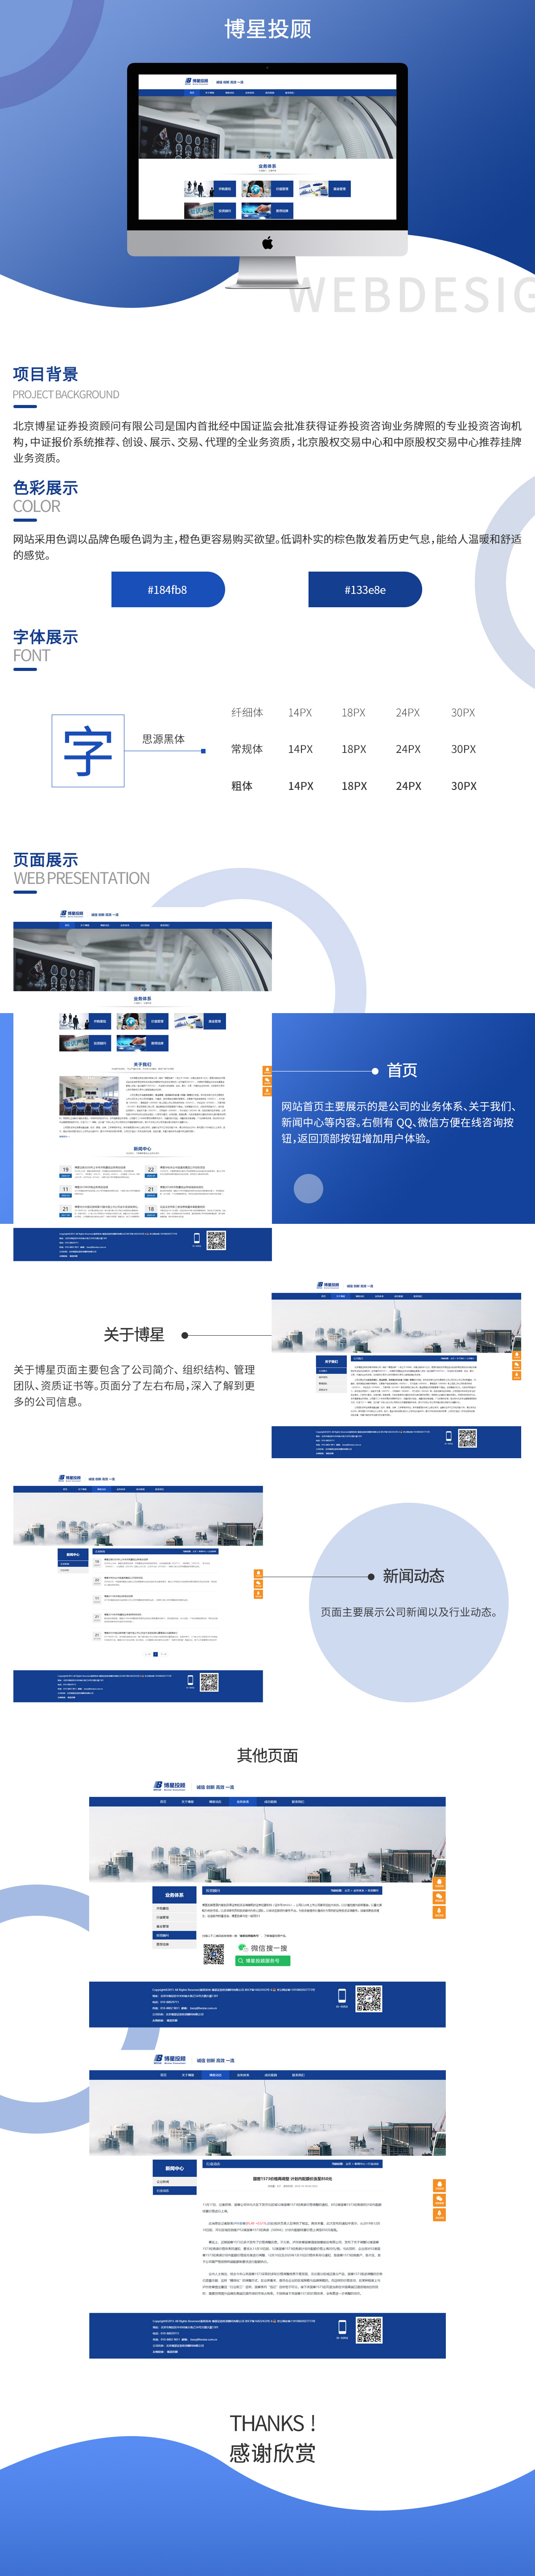 北京博星证券投资顾问有限企业网站案例